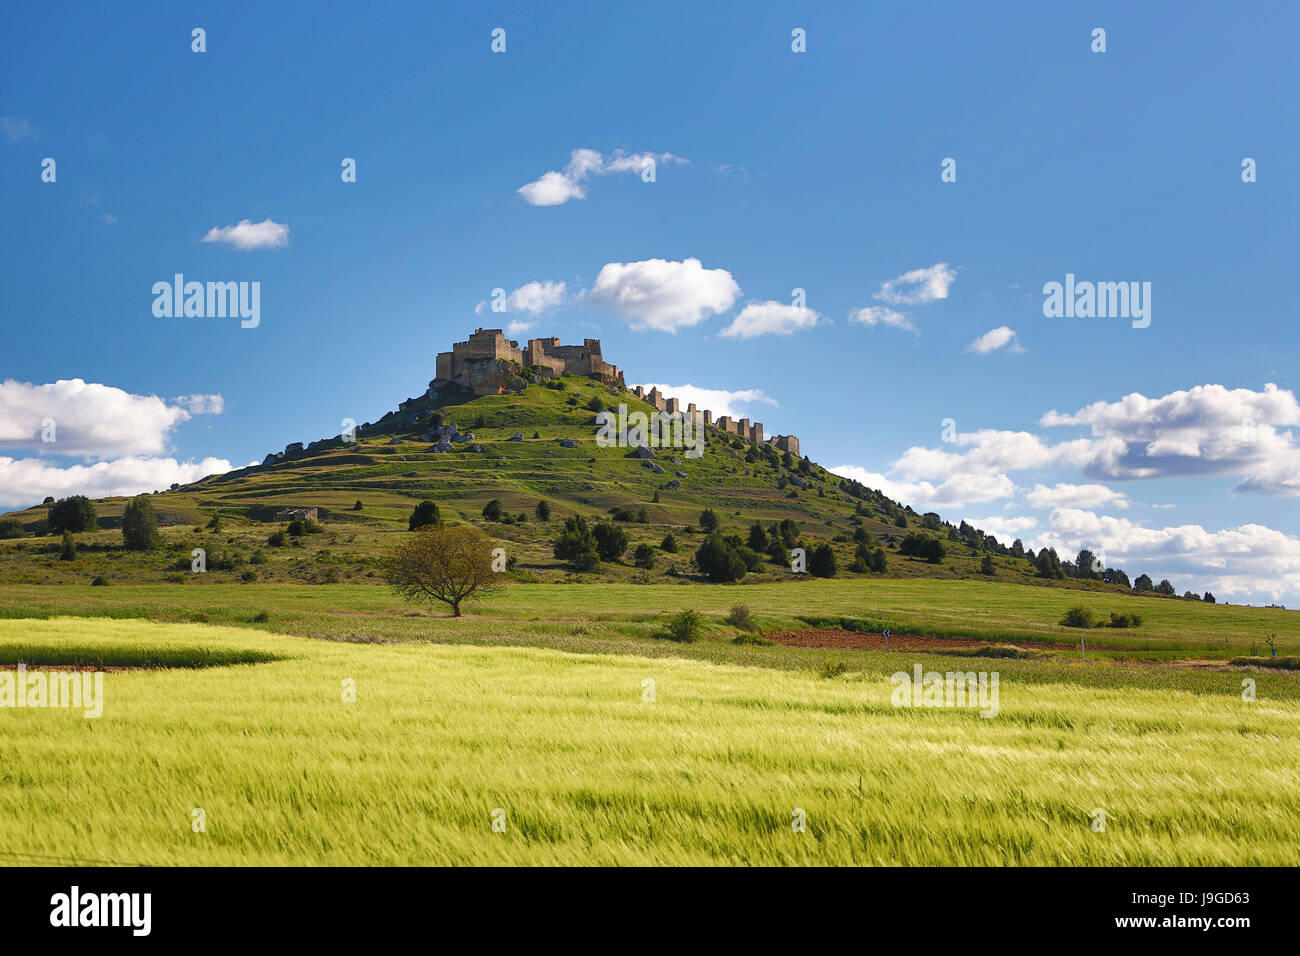 Spain, Castilla Leon Community, Soria Province, Gormaz Castle, Stock Photo